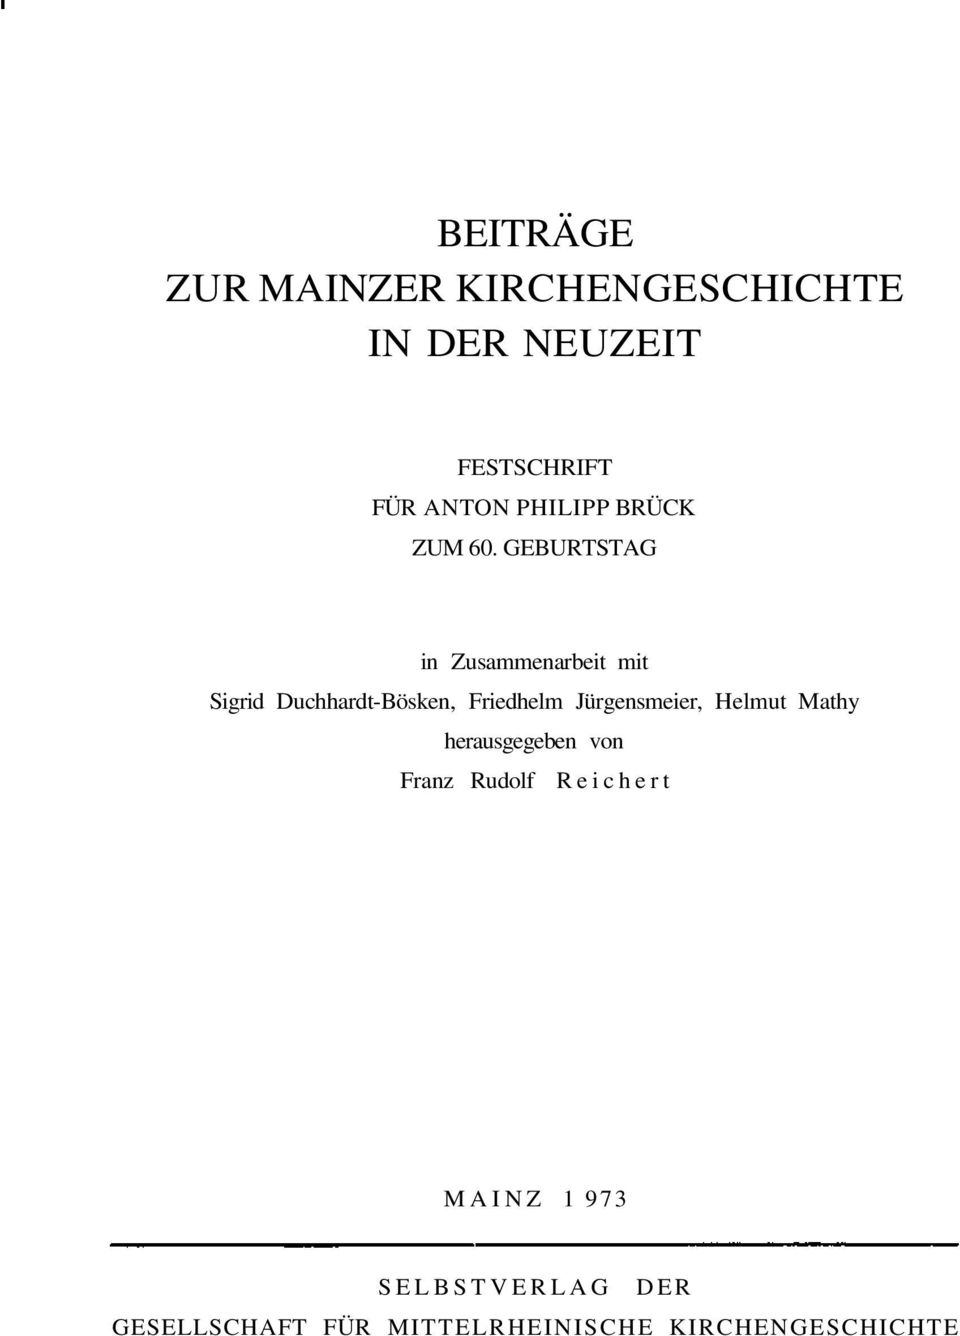 GEBURTSTAG in Zusammenarbeit mit Sigrid Duchhardt-Bösken, Friedhelm